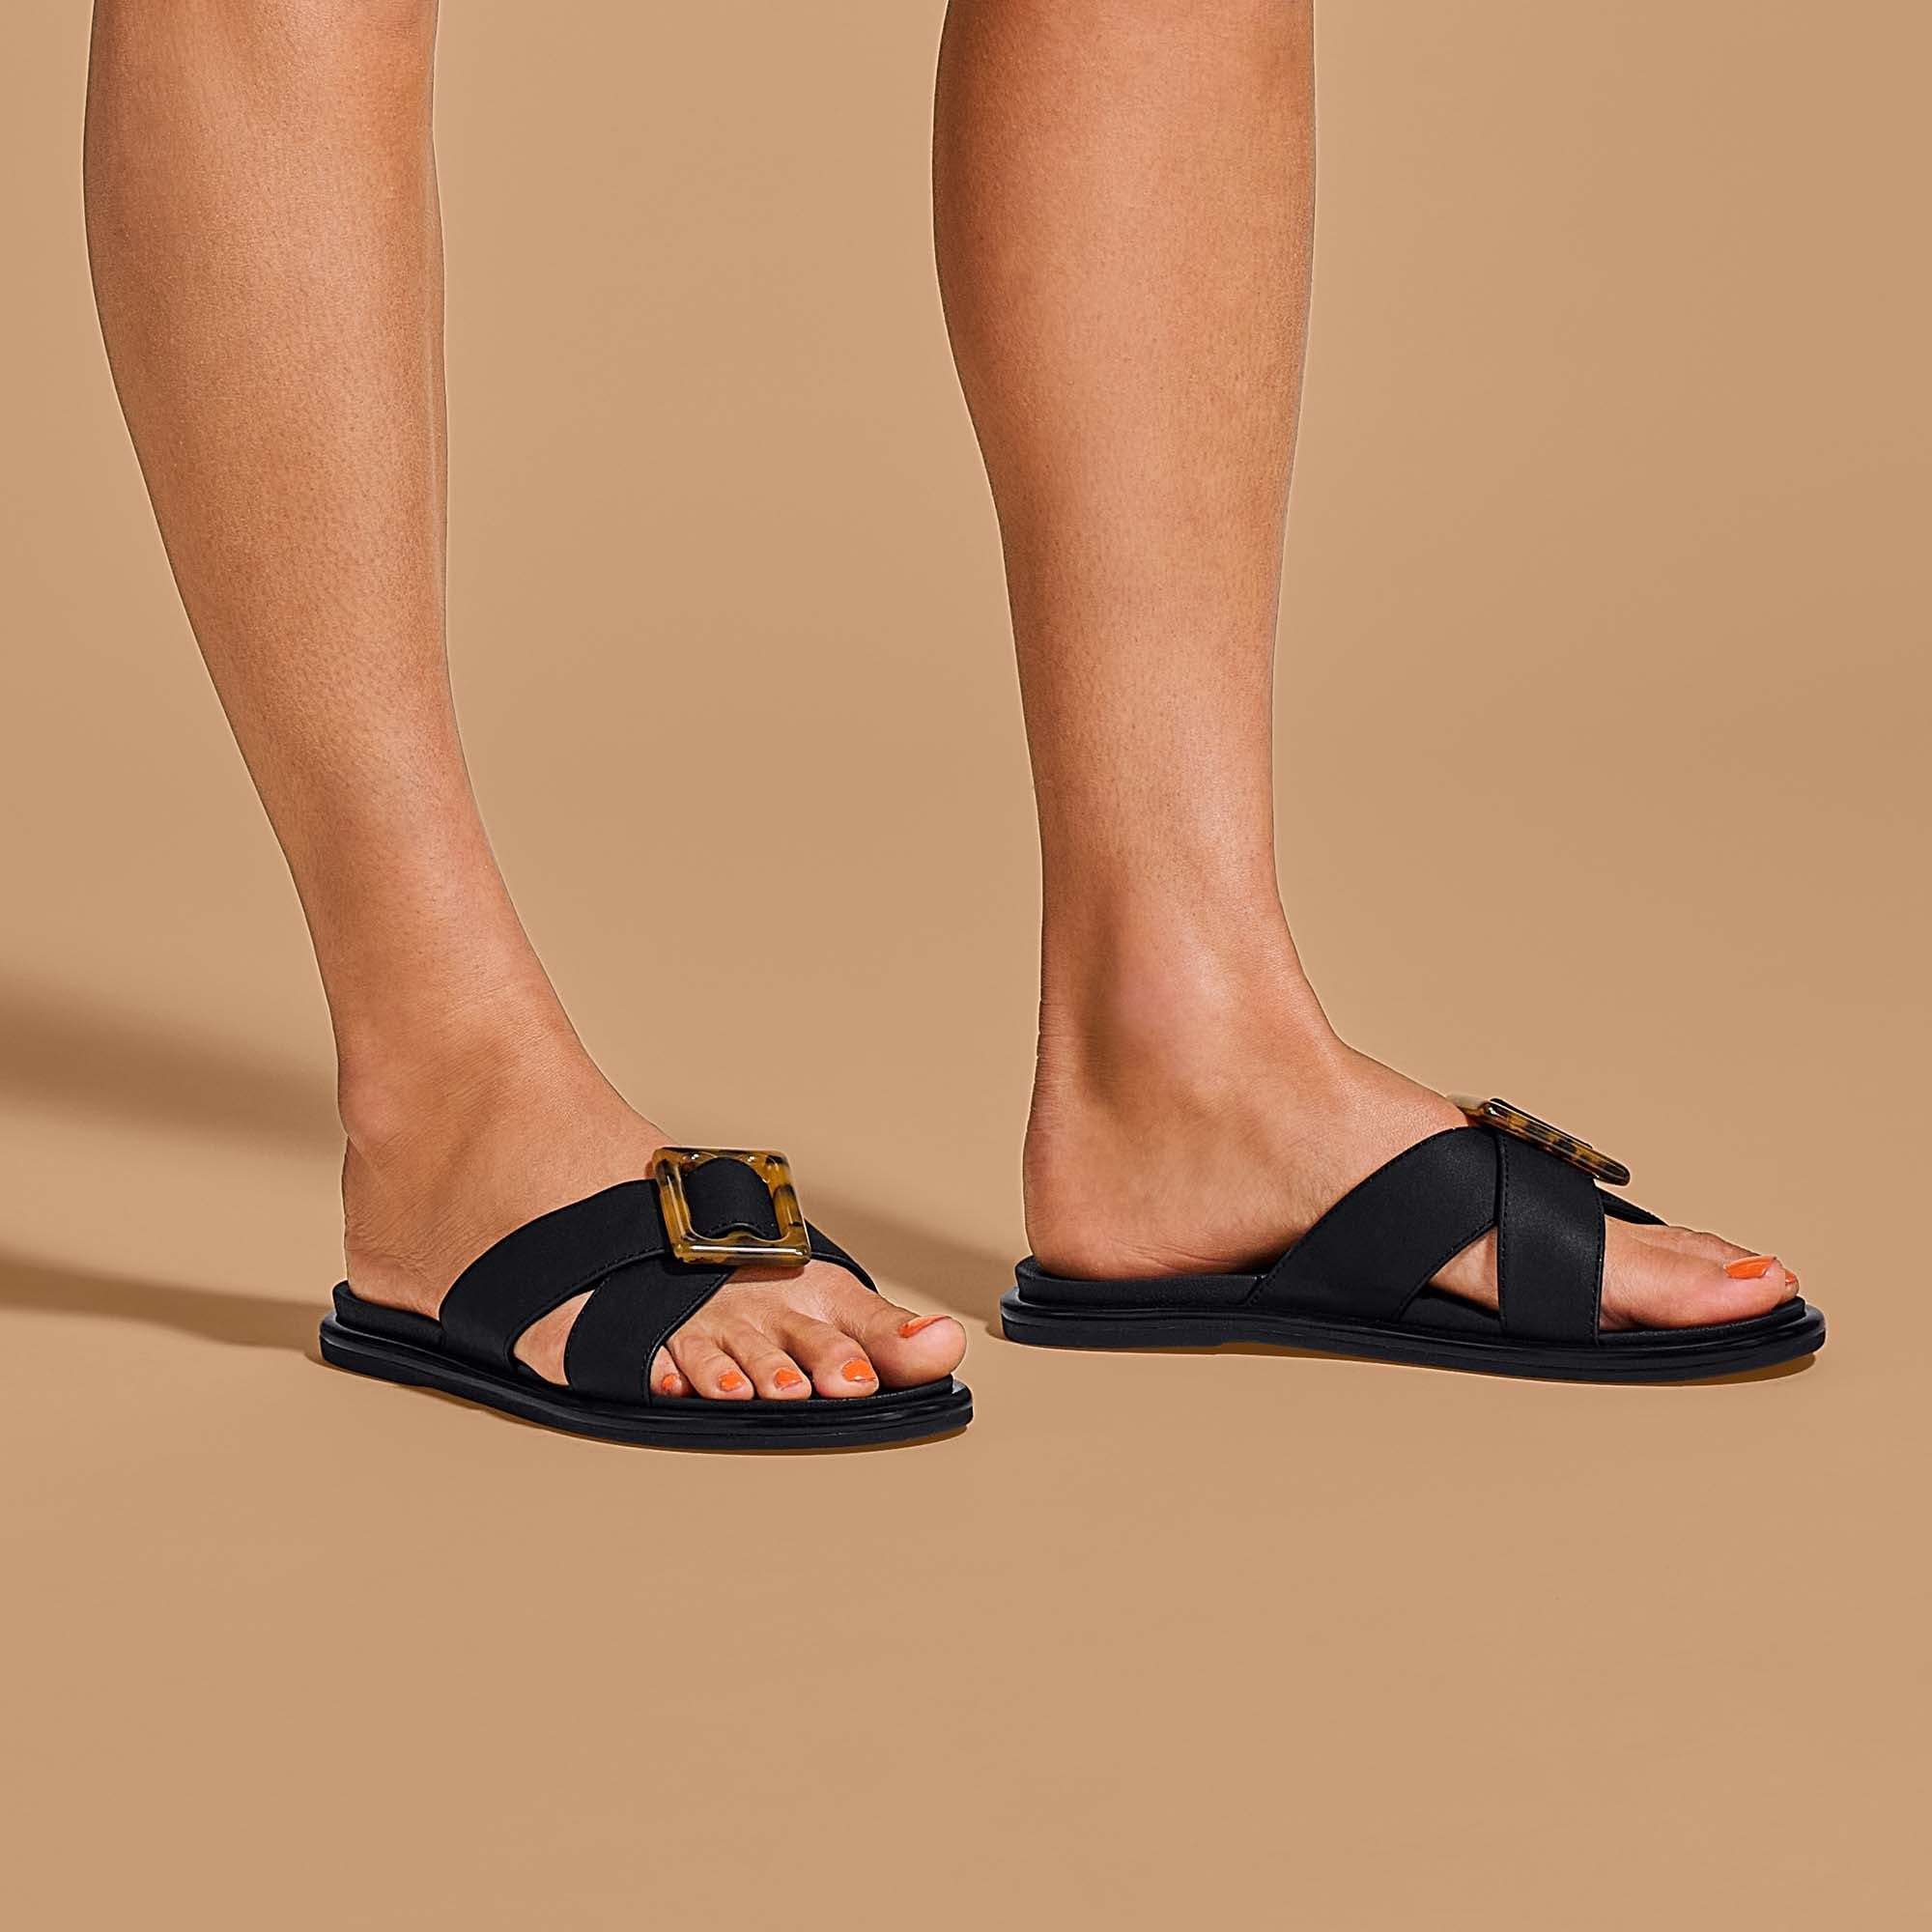 Ohana Women's Beach Sandals & Flip Flops - Black | OluKai – OluKai 